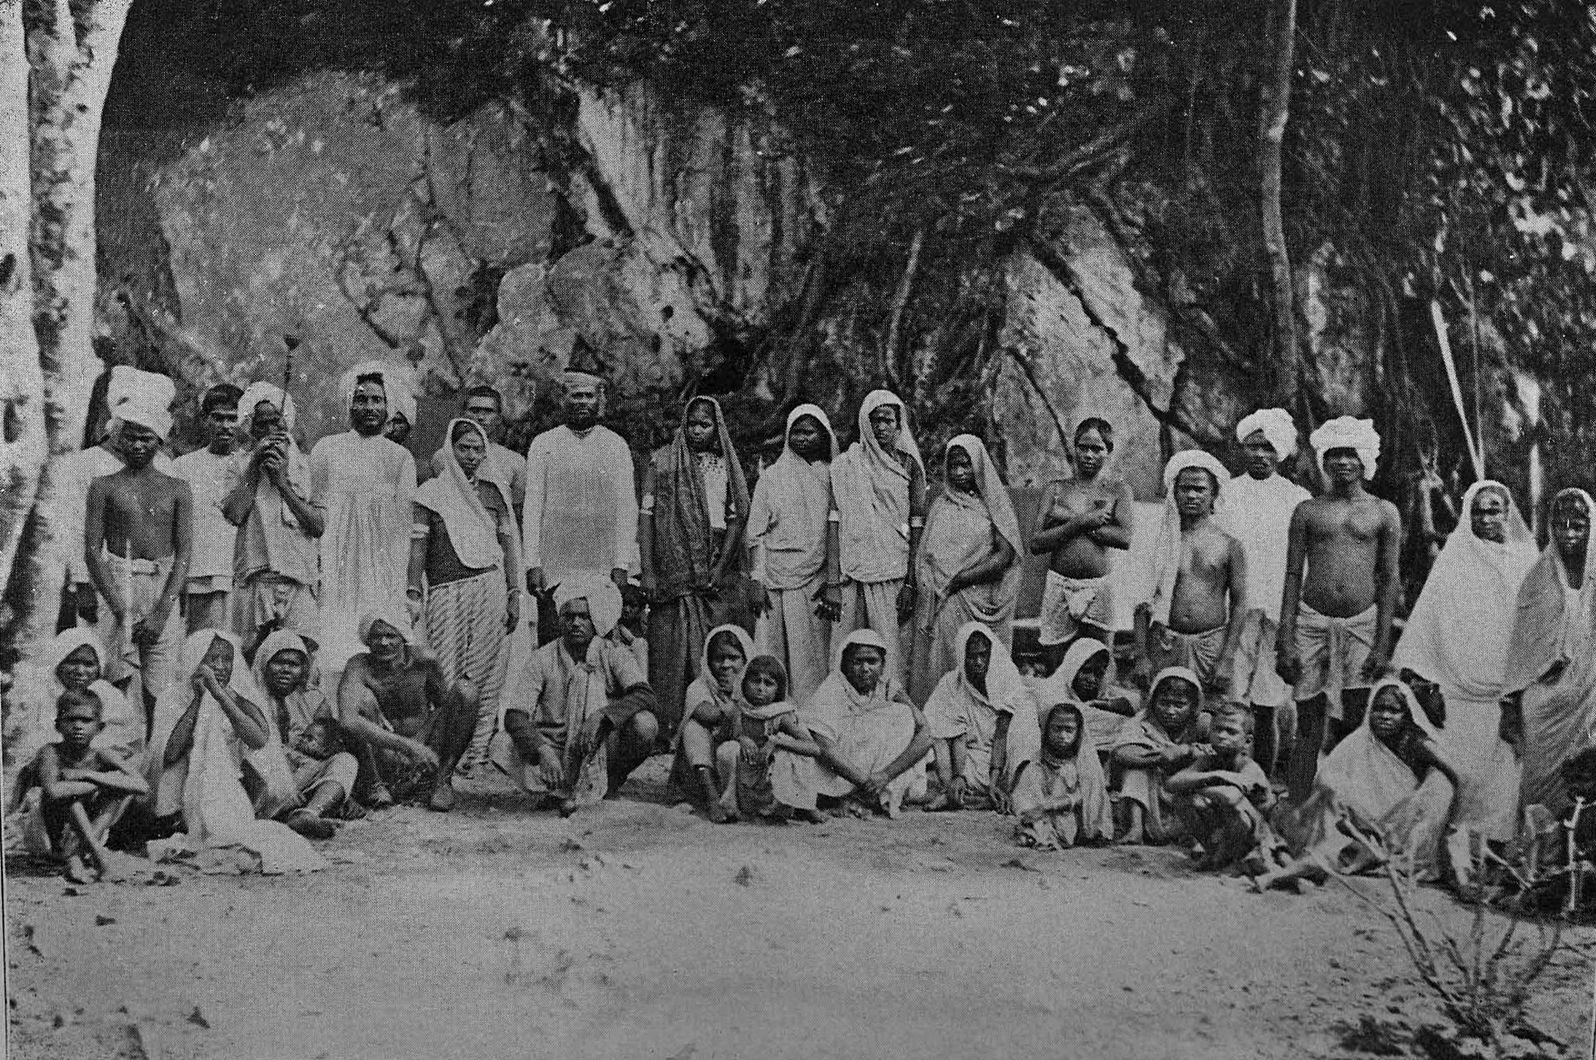  宗教と表現文化 - トリニダードの東インド人